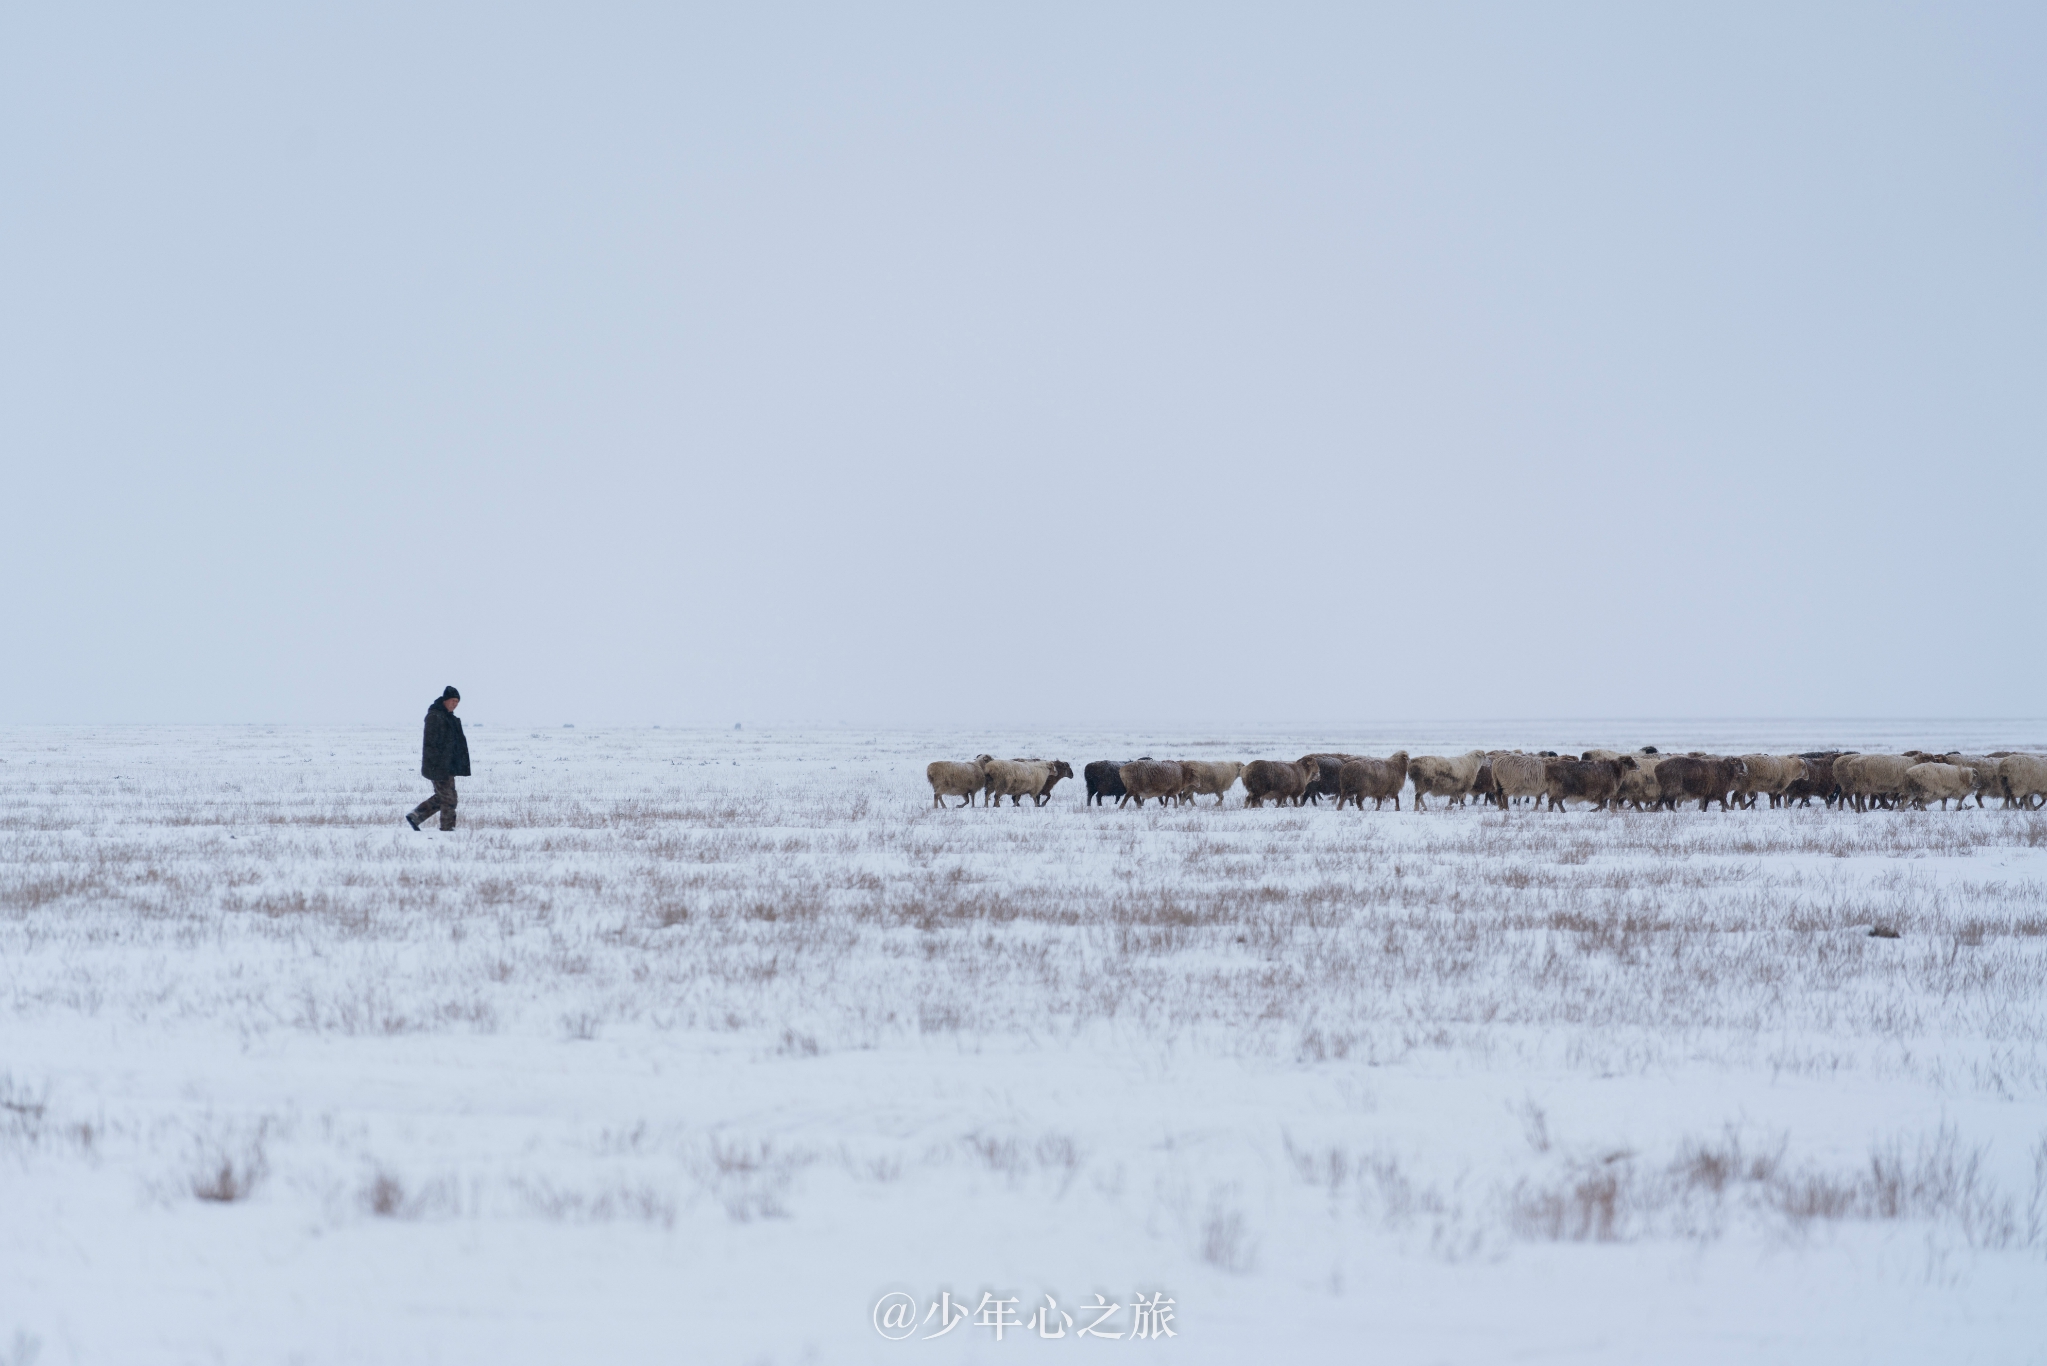 冬游新疆，你是我们梦回牵绕的远方